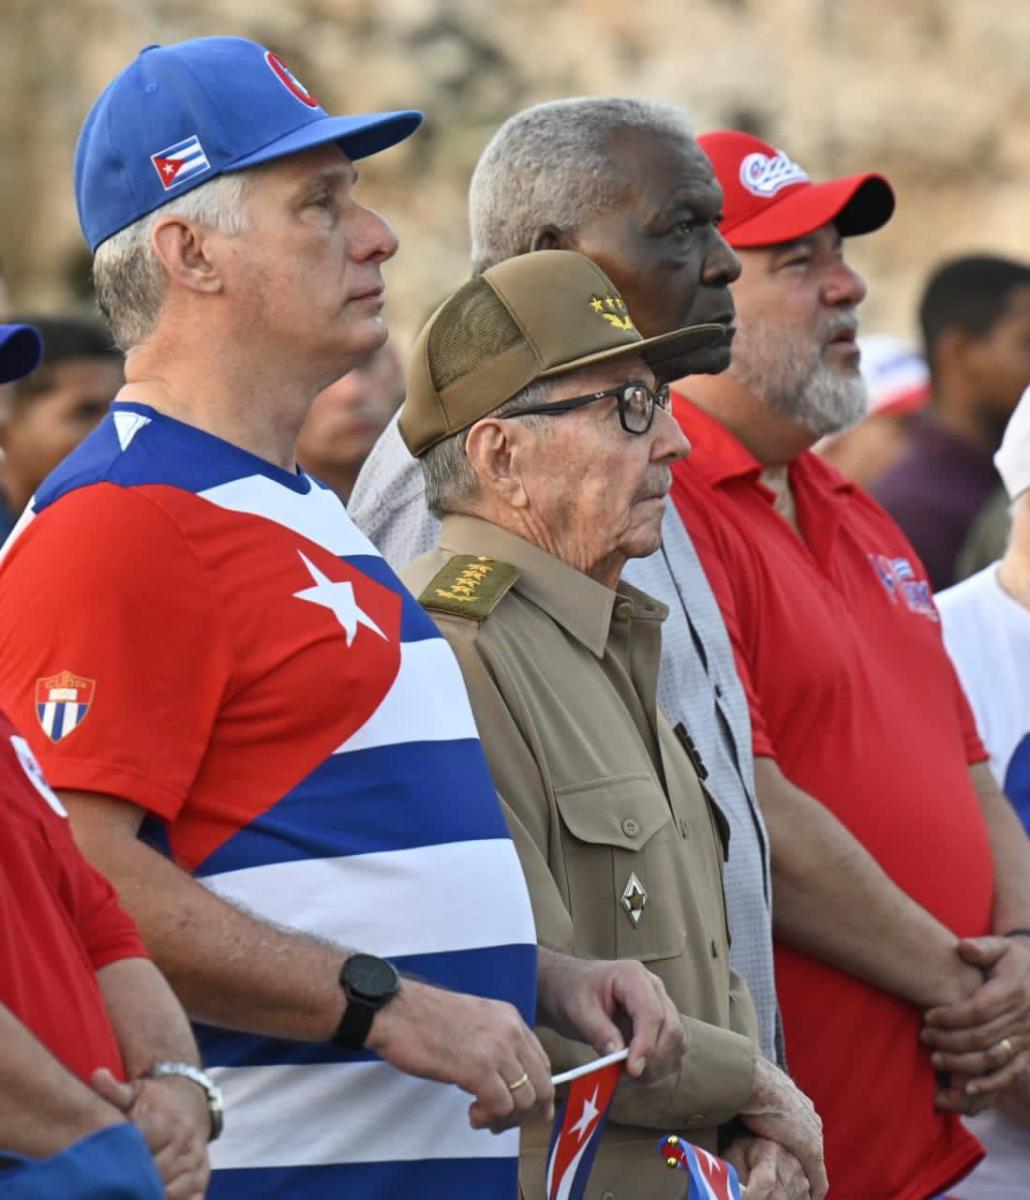 Justo a las 7, con las primeras luces del alba, las notas del himno nacional marcaron el inicio del acto, presidido además por el General de Ejército, Raúl Castro Ruz y otros dirigentes del Partido y del Gobierno cubano.